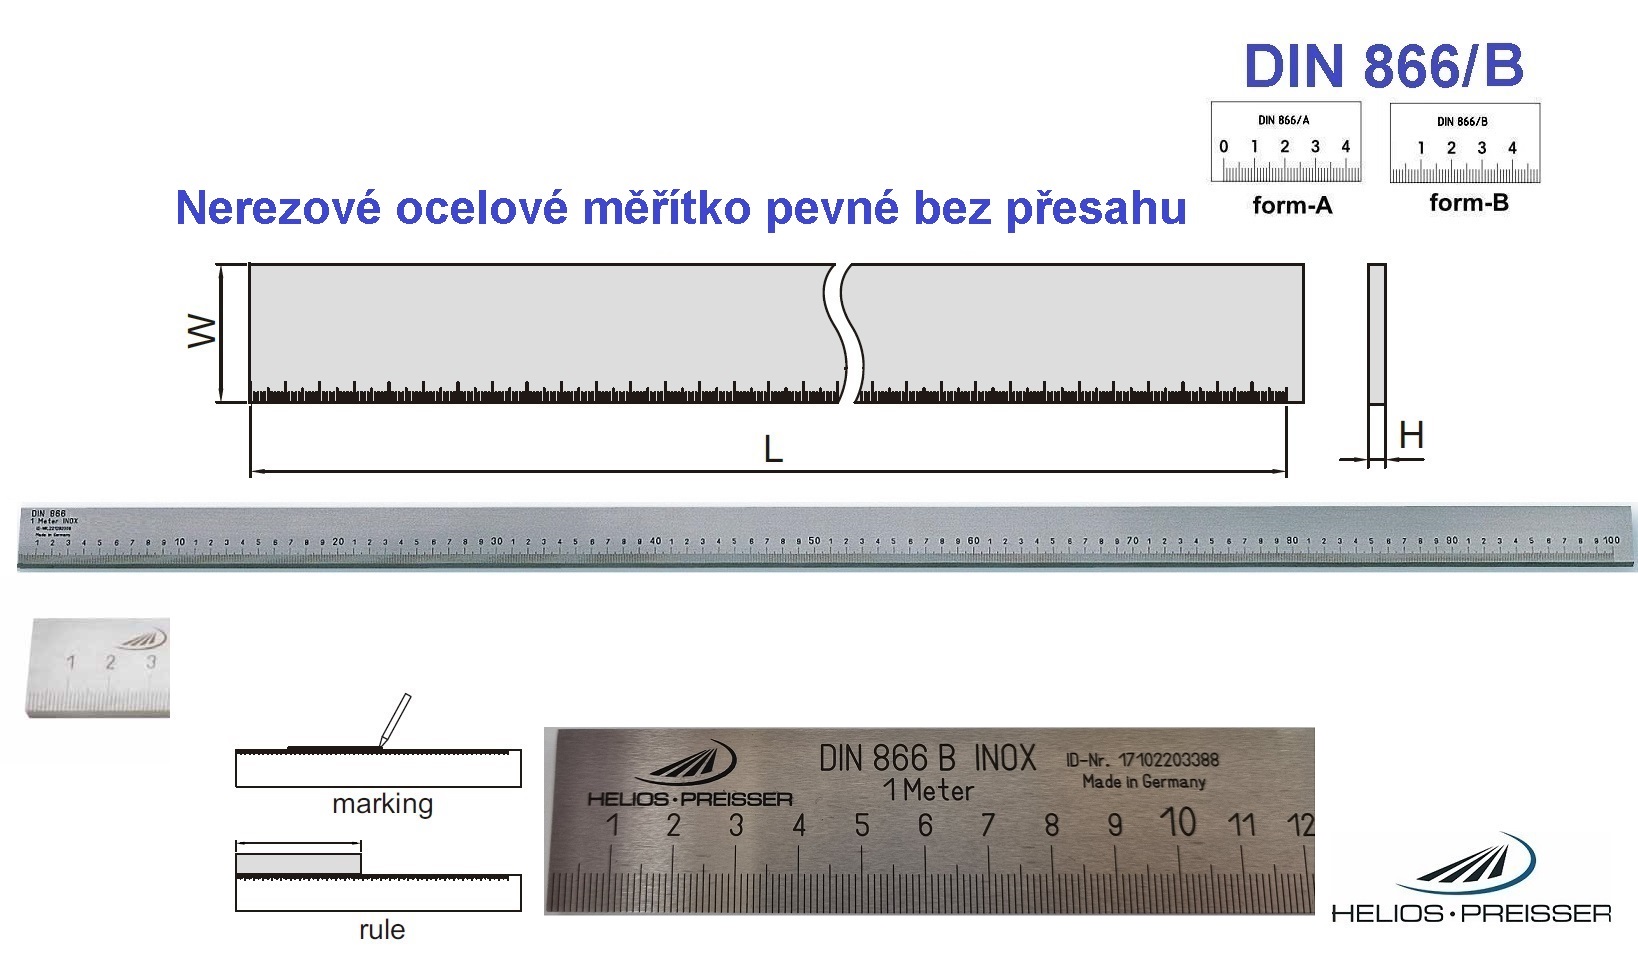 Nerezové ocelové měřítko pevné bez přesahu 3000 /40x8 mm, DIN 866/B, Helios-Preisser